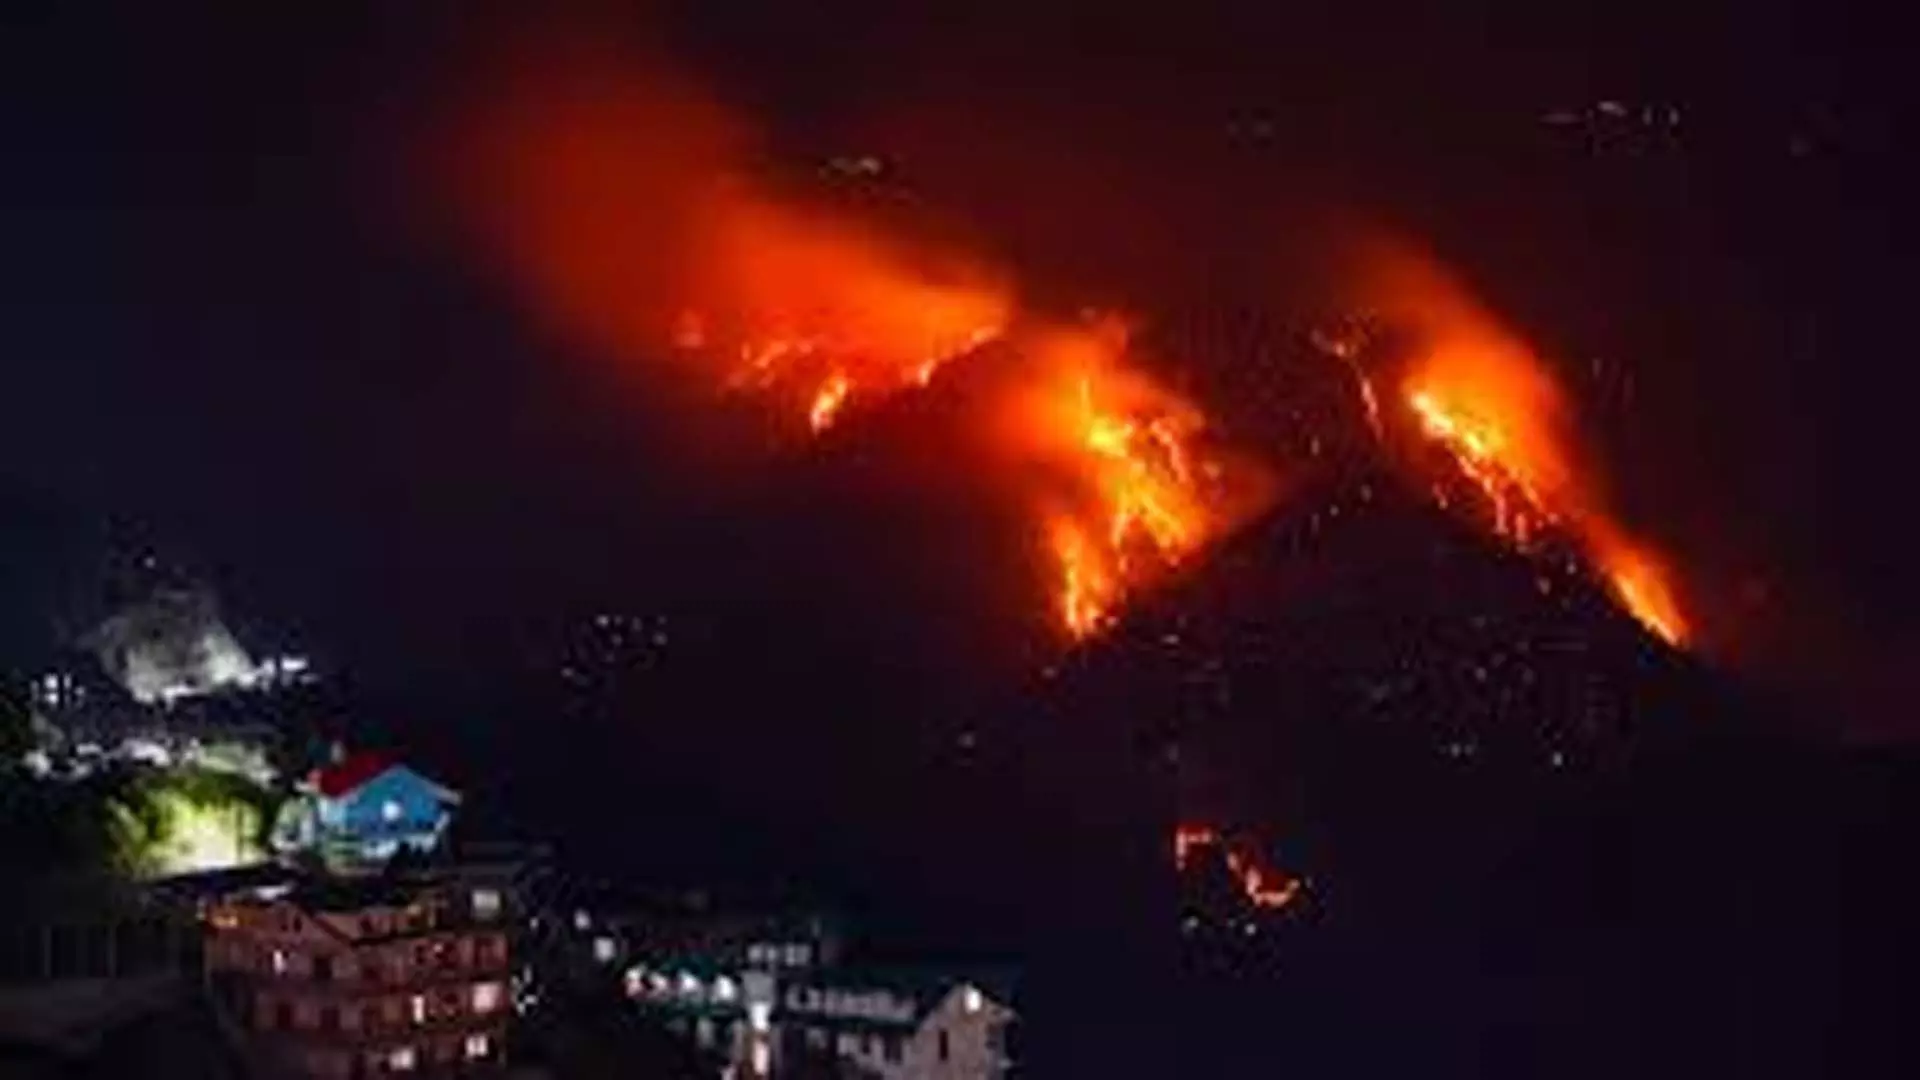 फॉरेस्ट क्षेत्र में लगी आग, भीषण गर्मी के चलते 991 घटनाएं आयी सामने